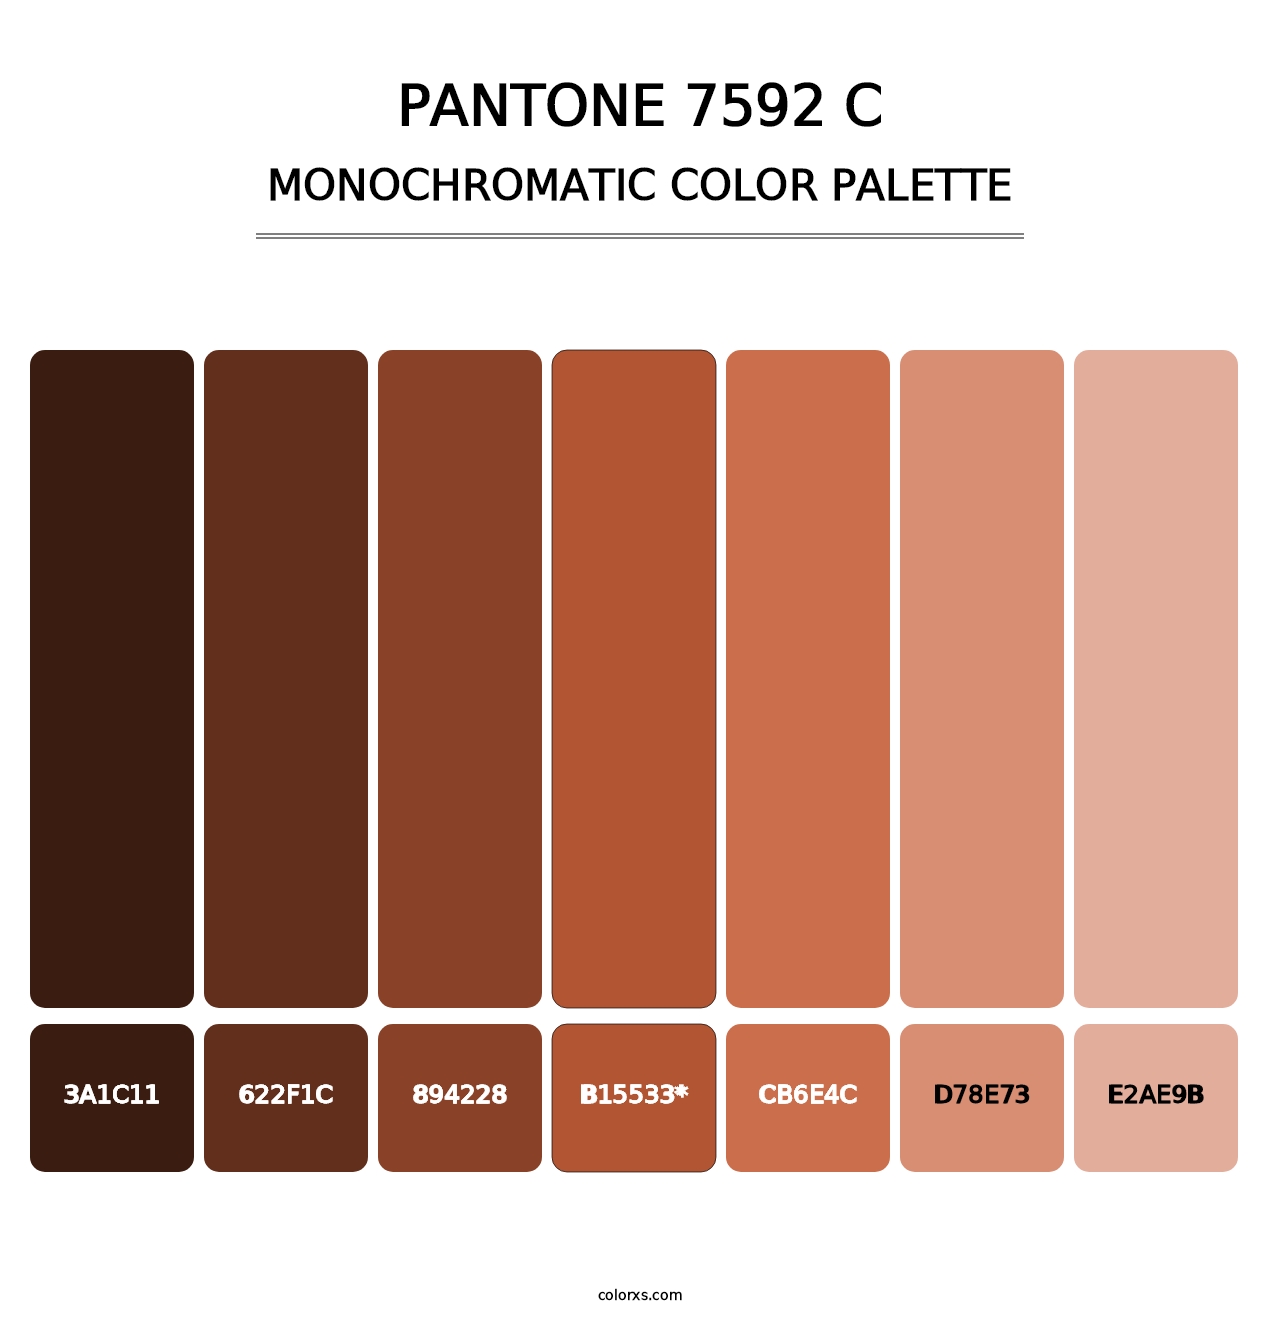 PANTONE 7592 C - Monochromatic Color Palette